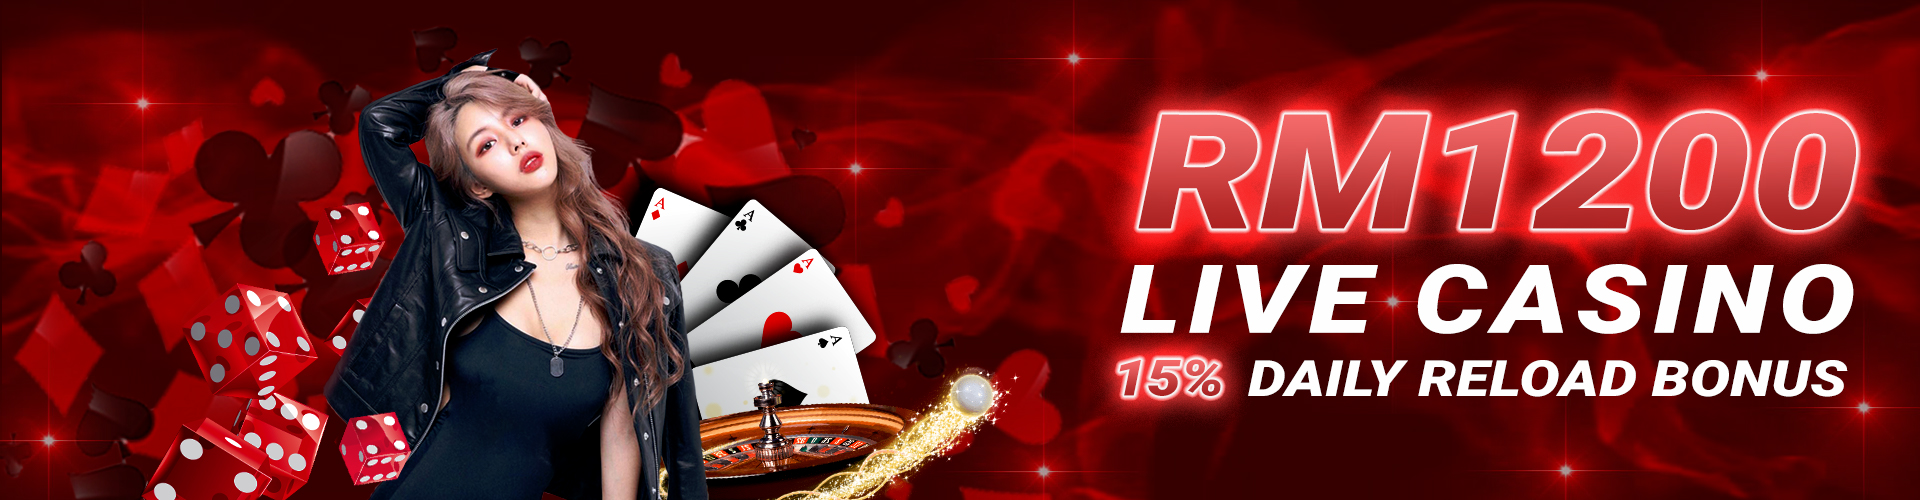 RM1200 Live Casino 15% DAILY RELOAD BONUS